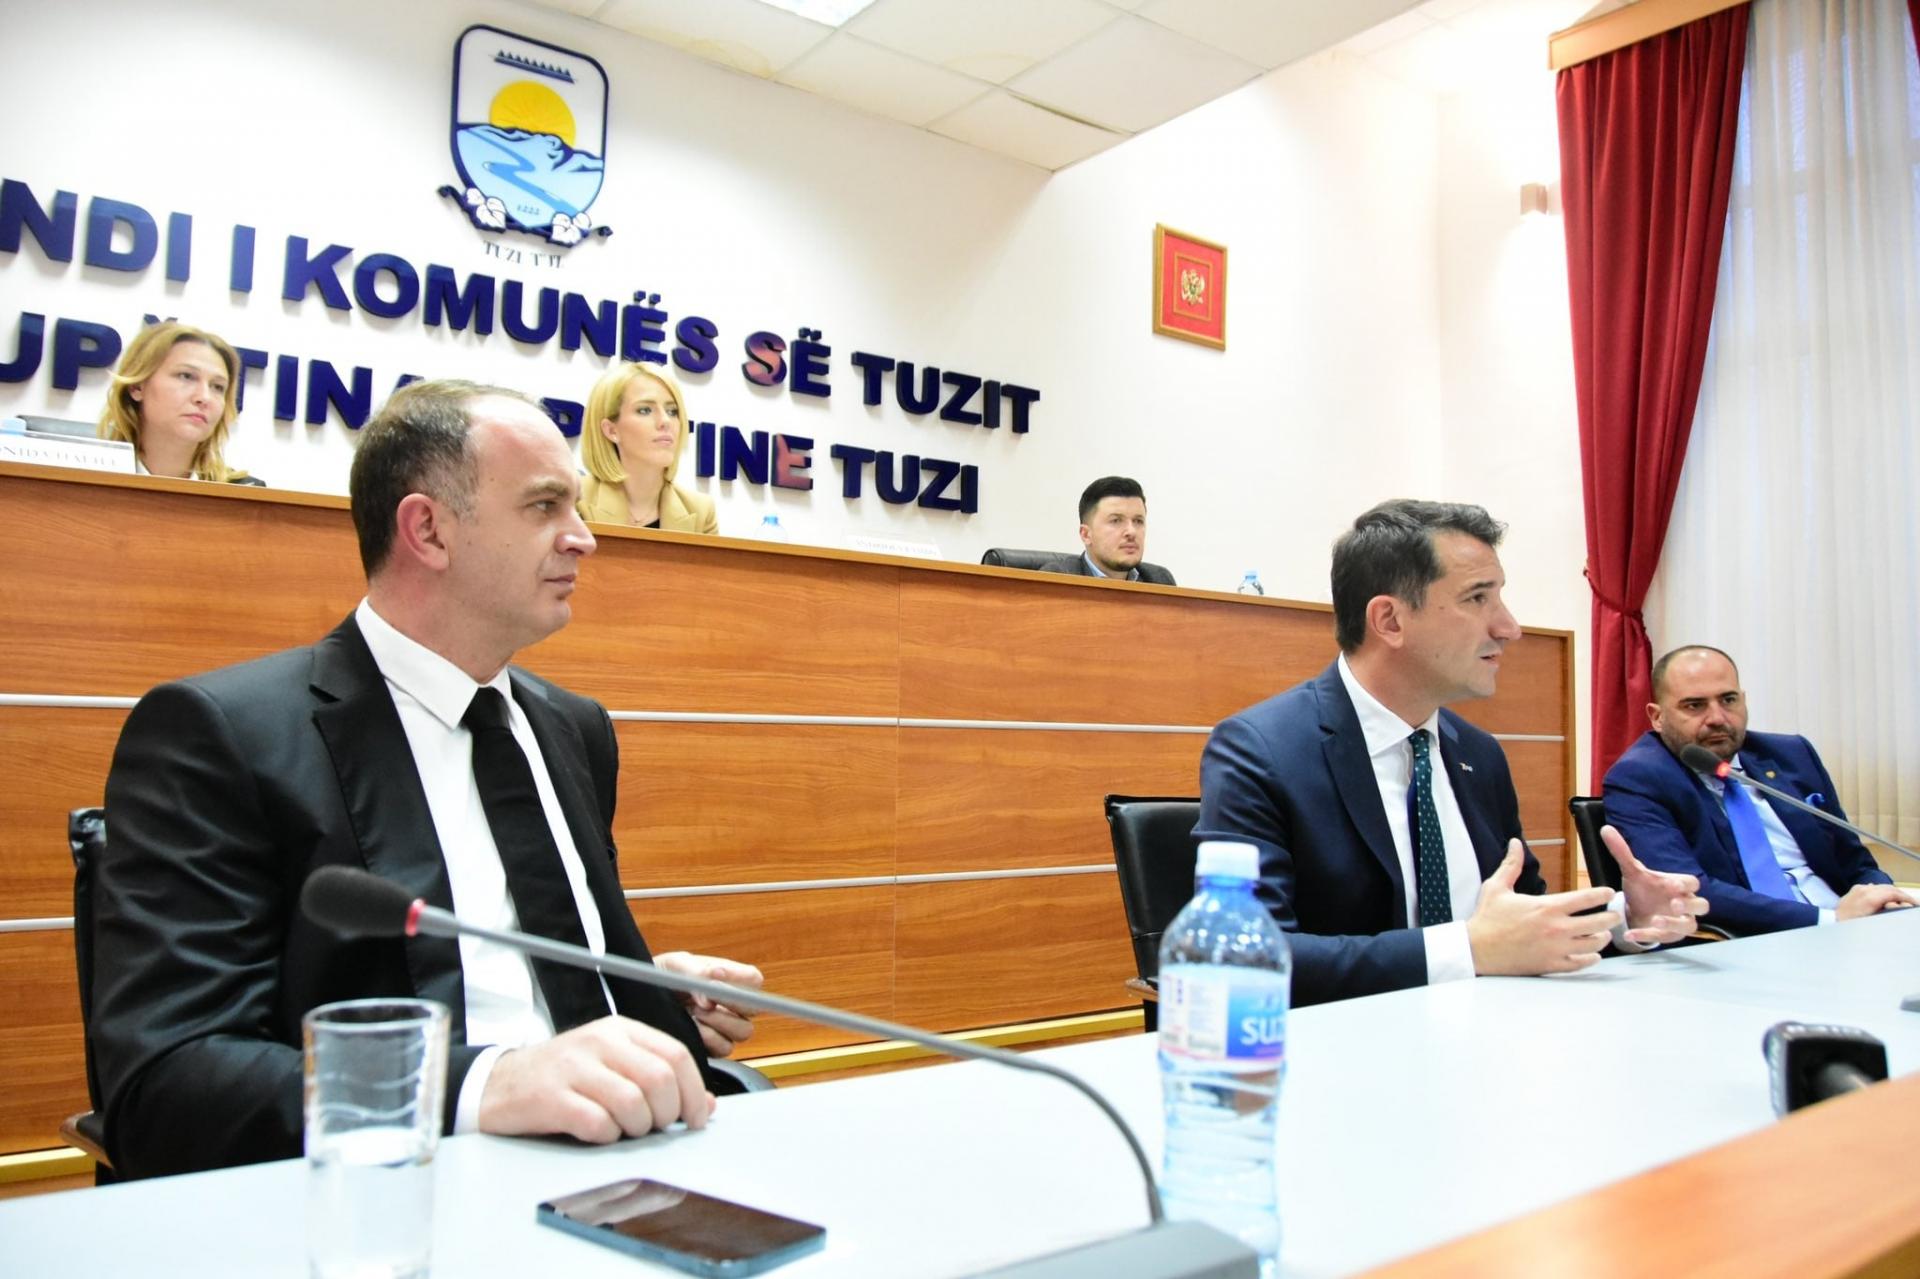 Kryebashkiaku i Tiranës Erion Veliaj vizitoi komunën e Tuzit